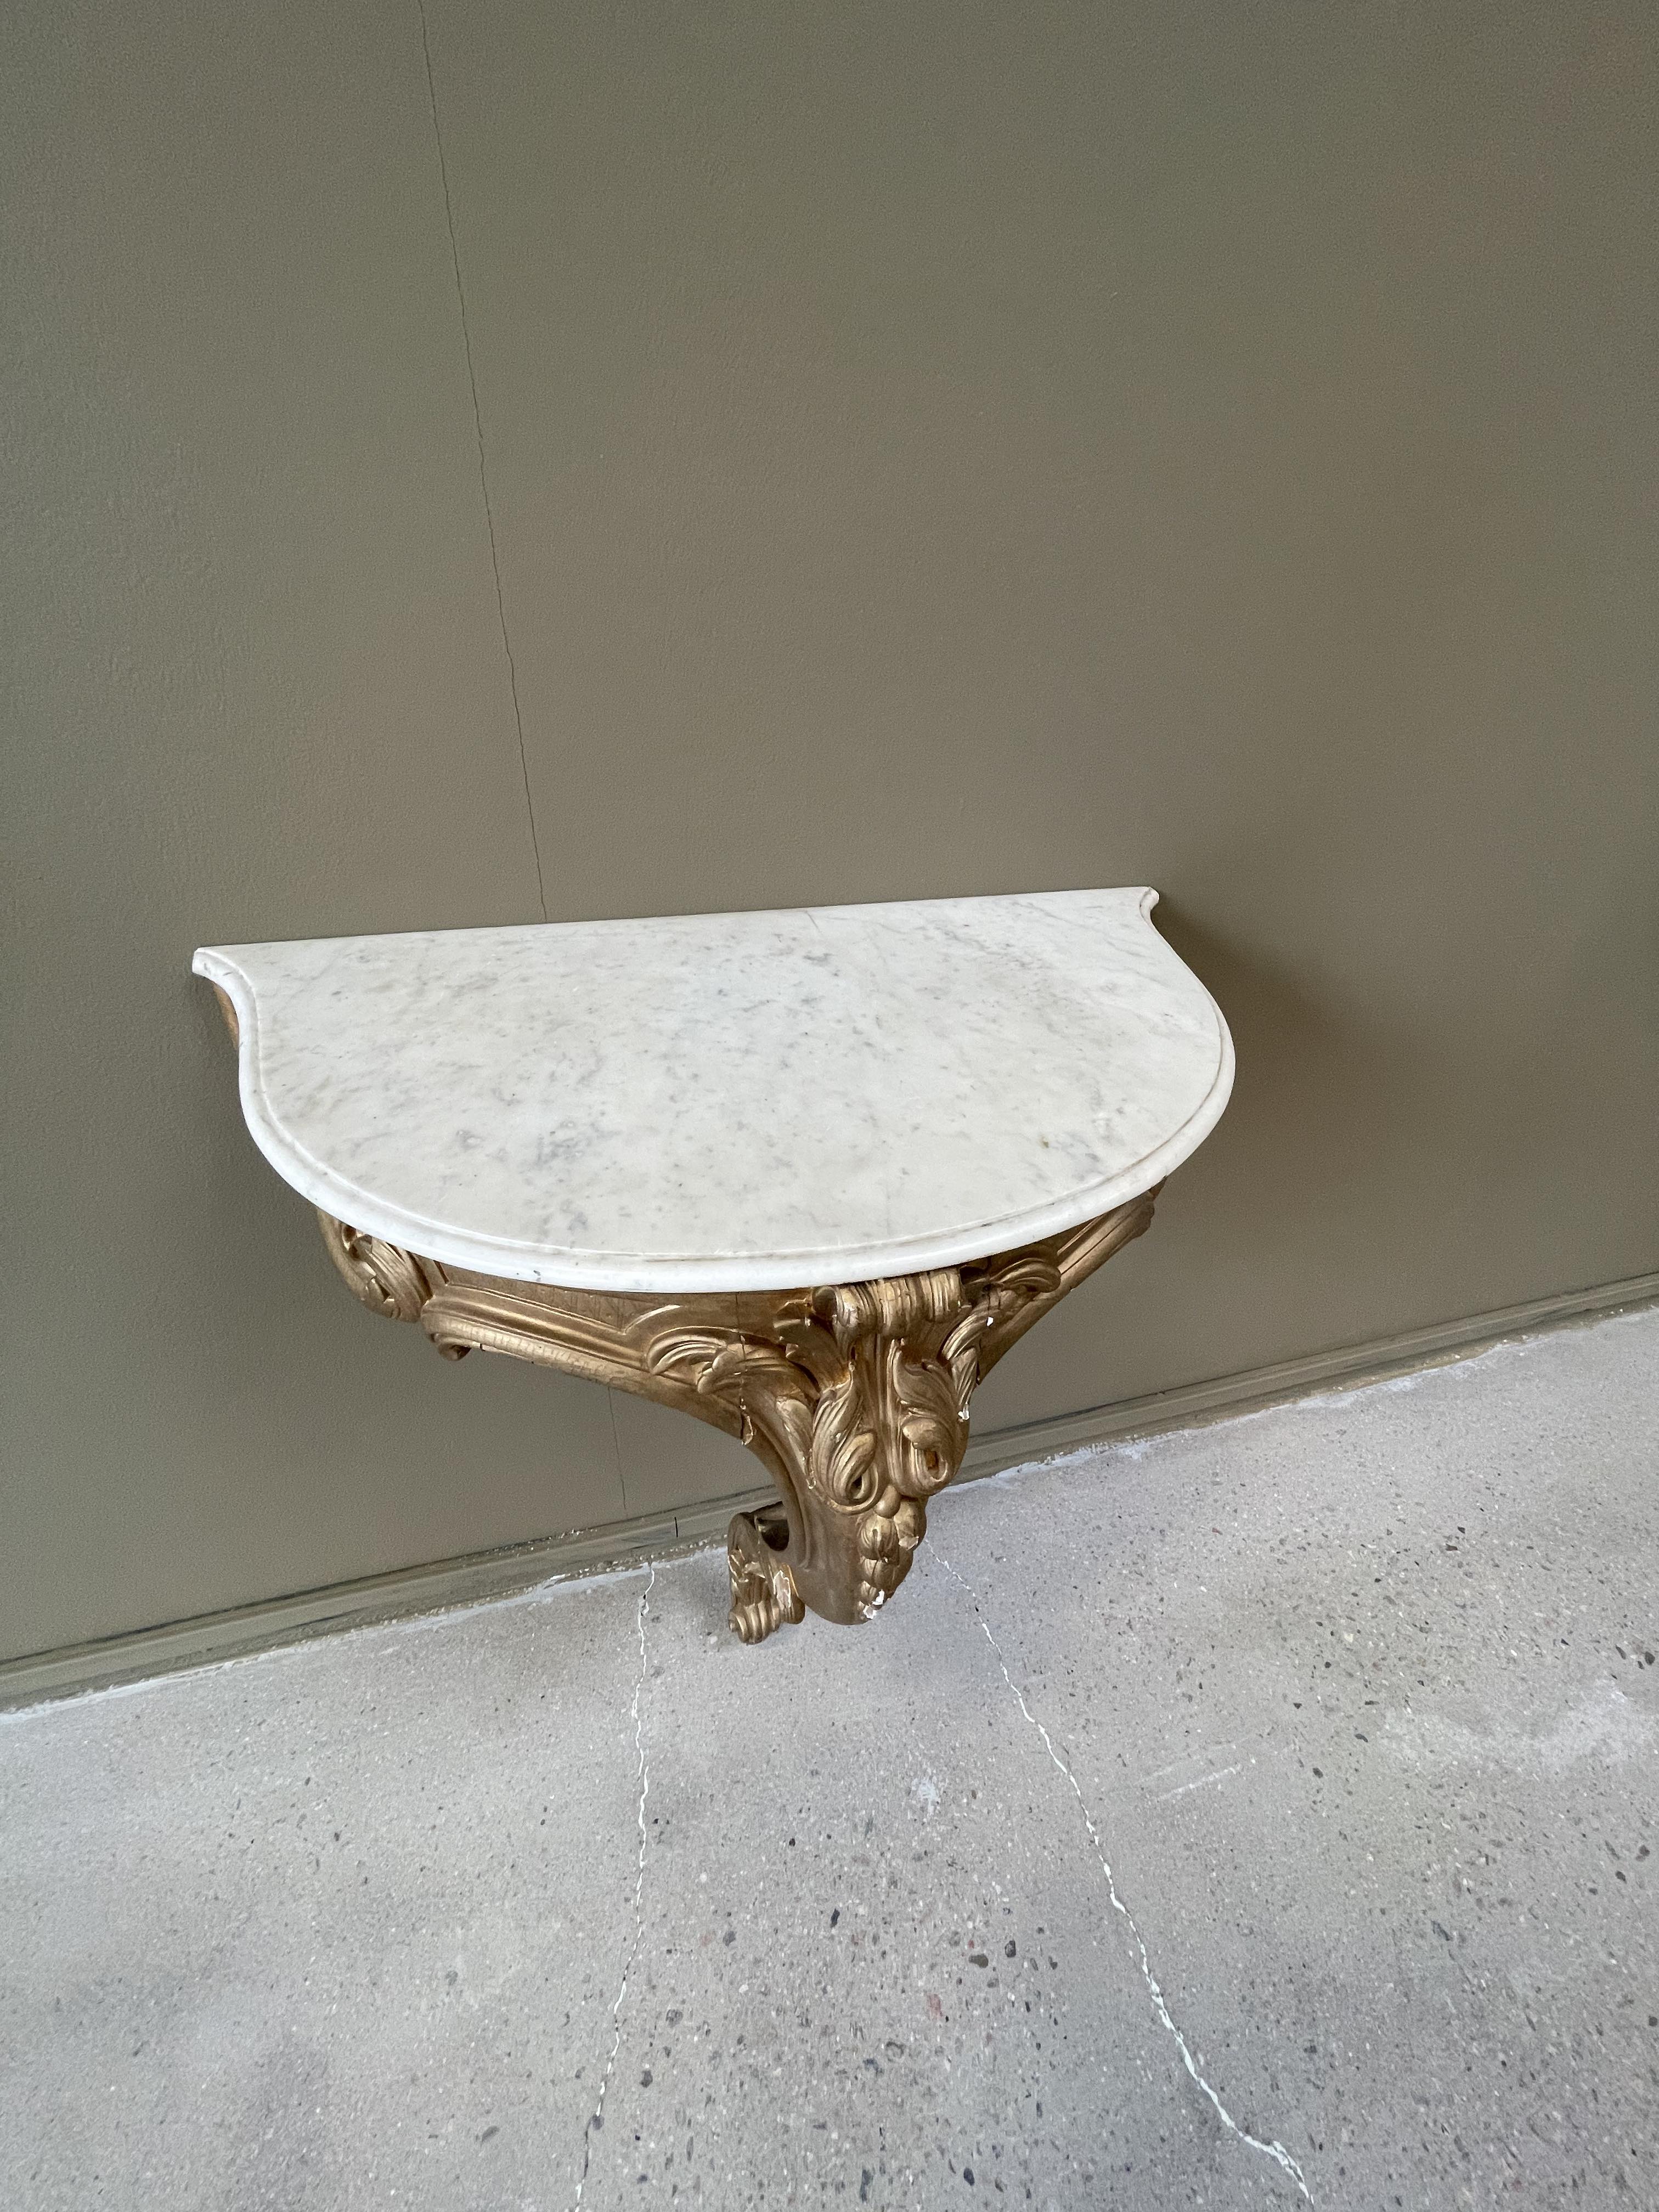 Väggfast bord med vit marmorskiva